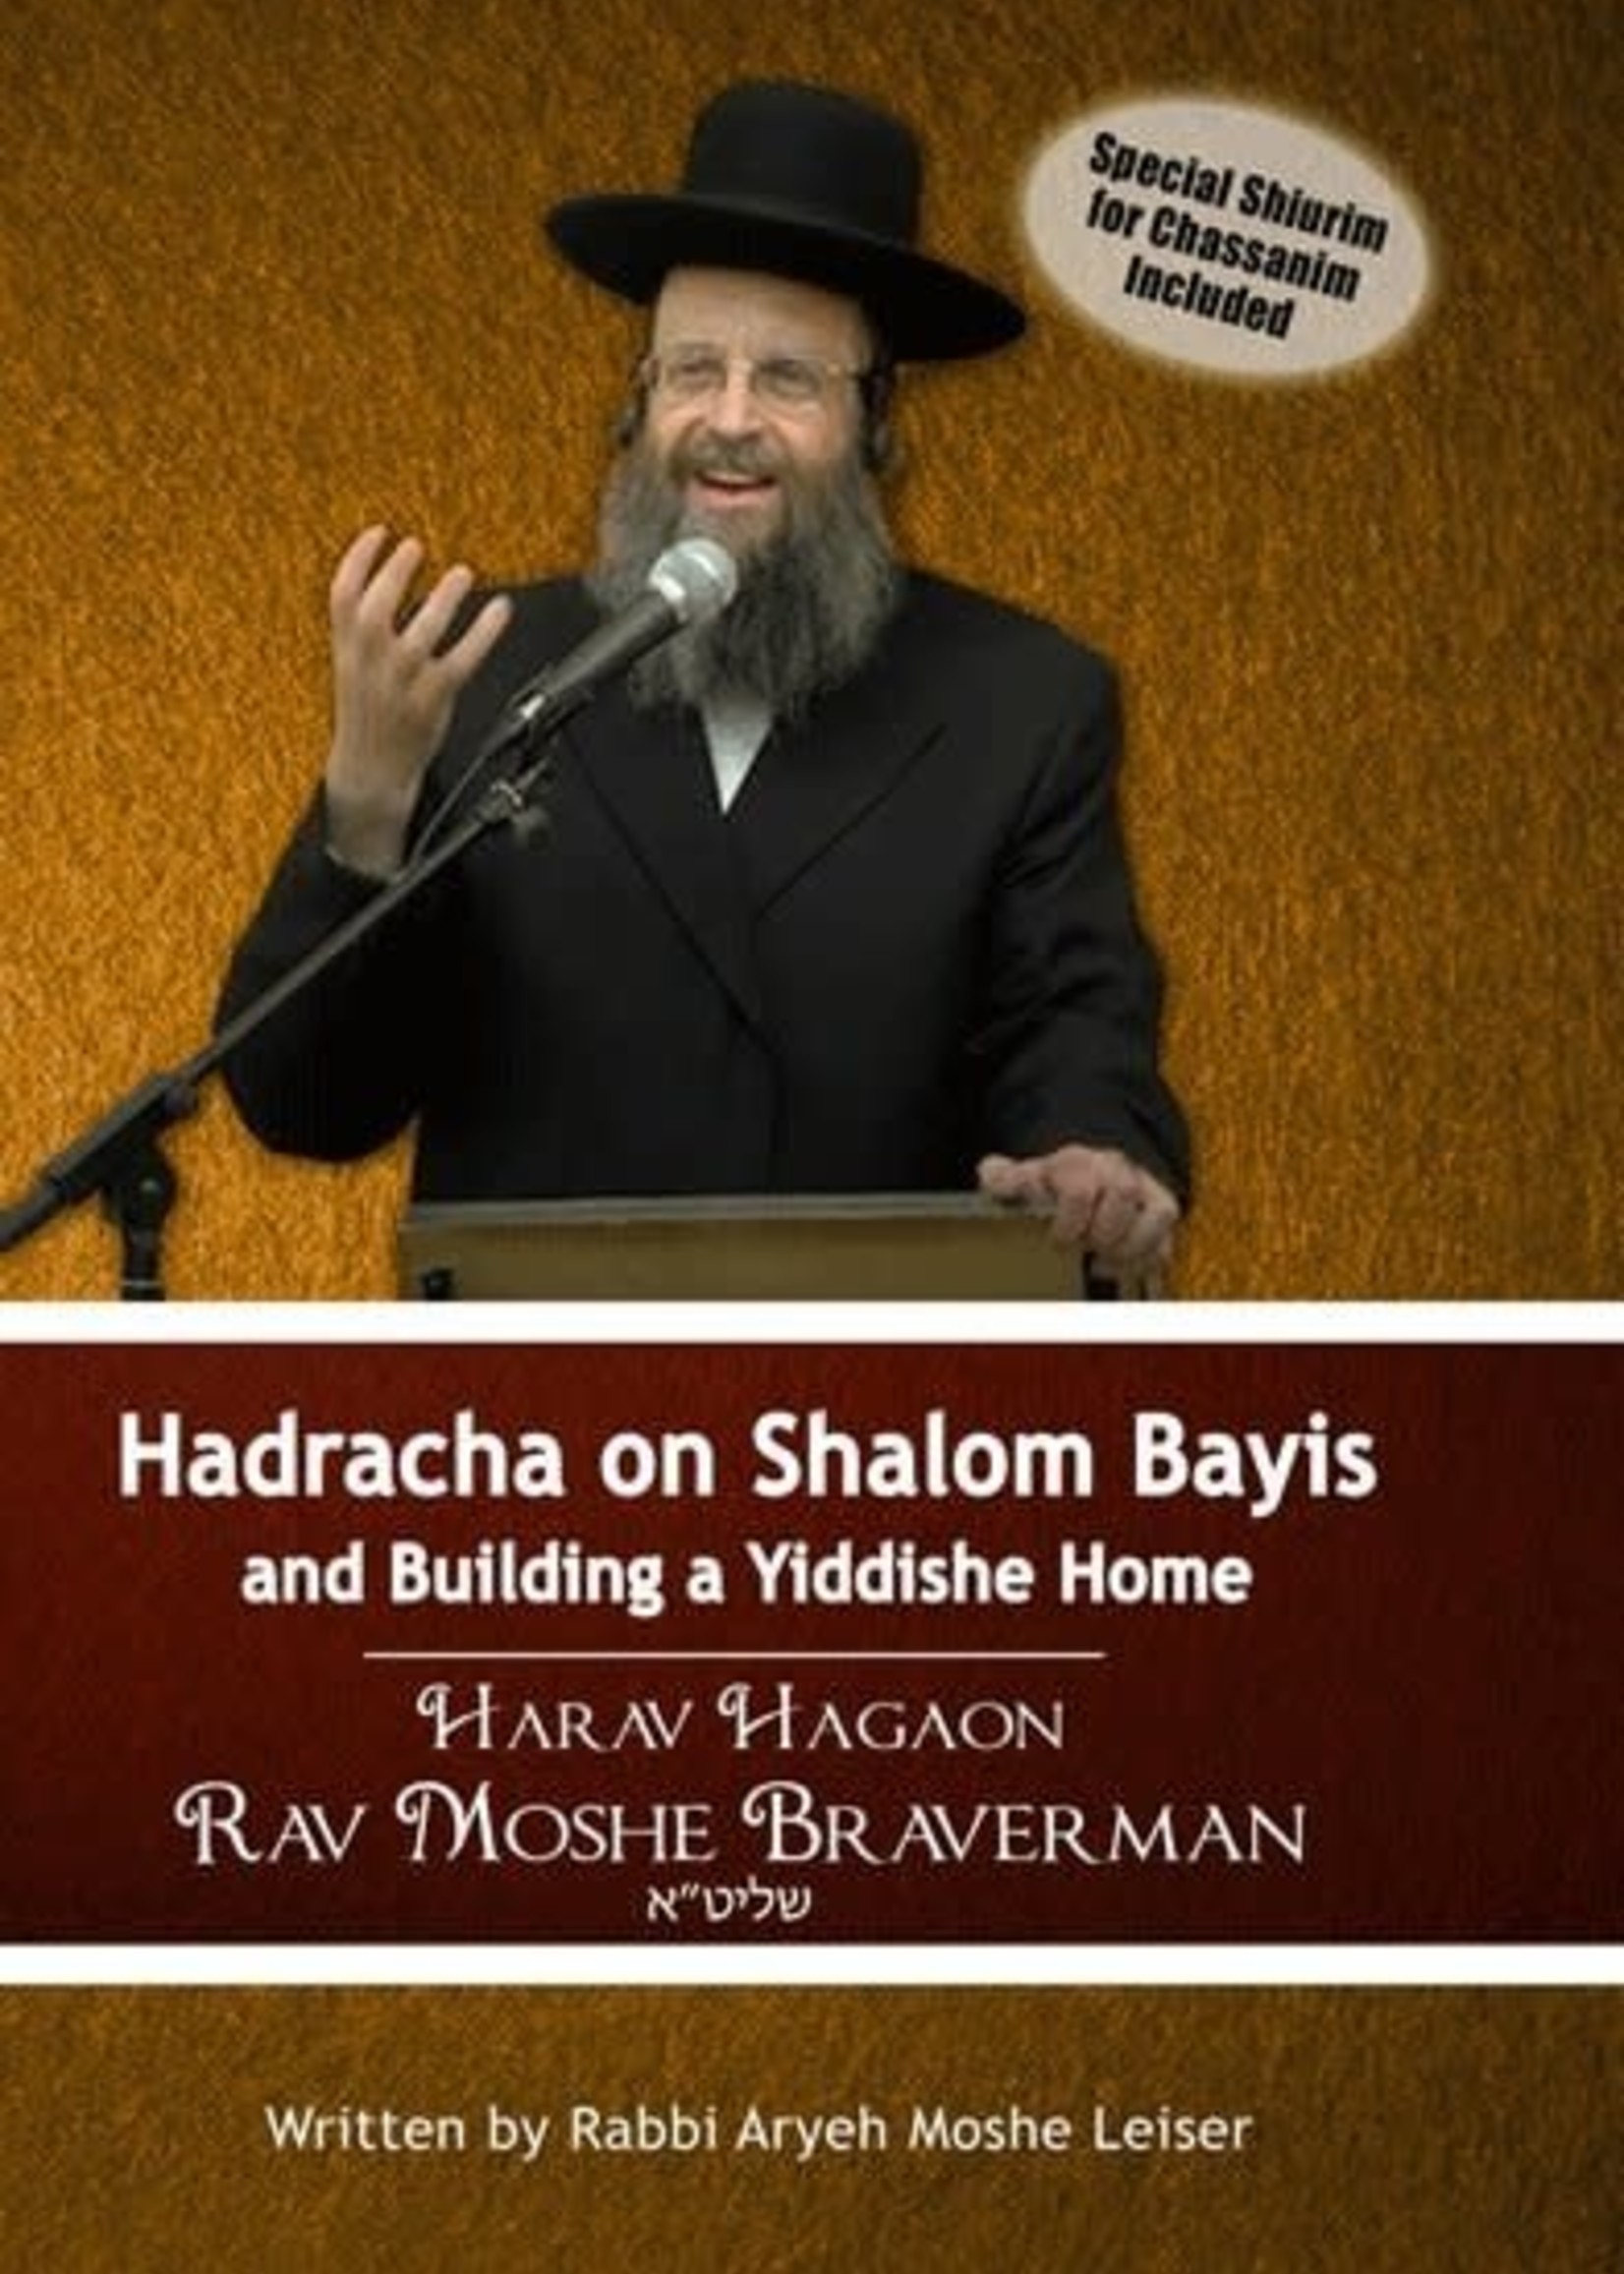 Hadracha on Shalom Bayis and Building a Yiddishe Home (Rav Moshe Braverman)